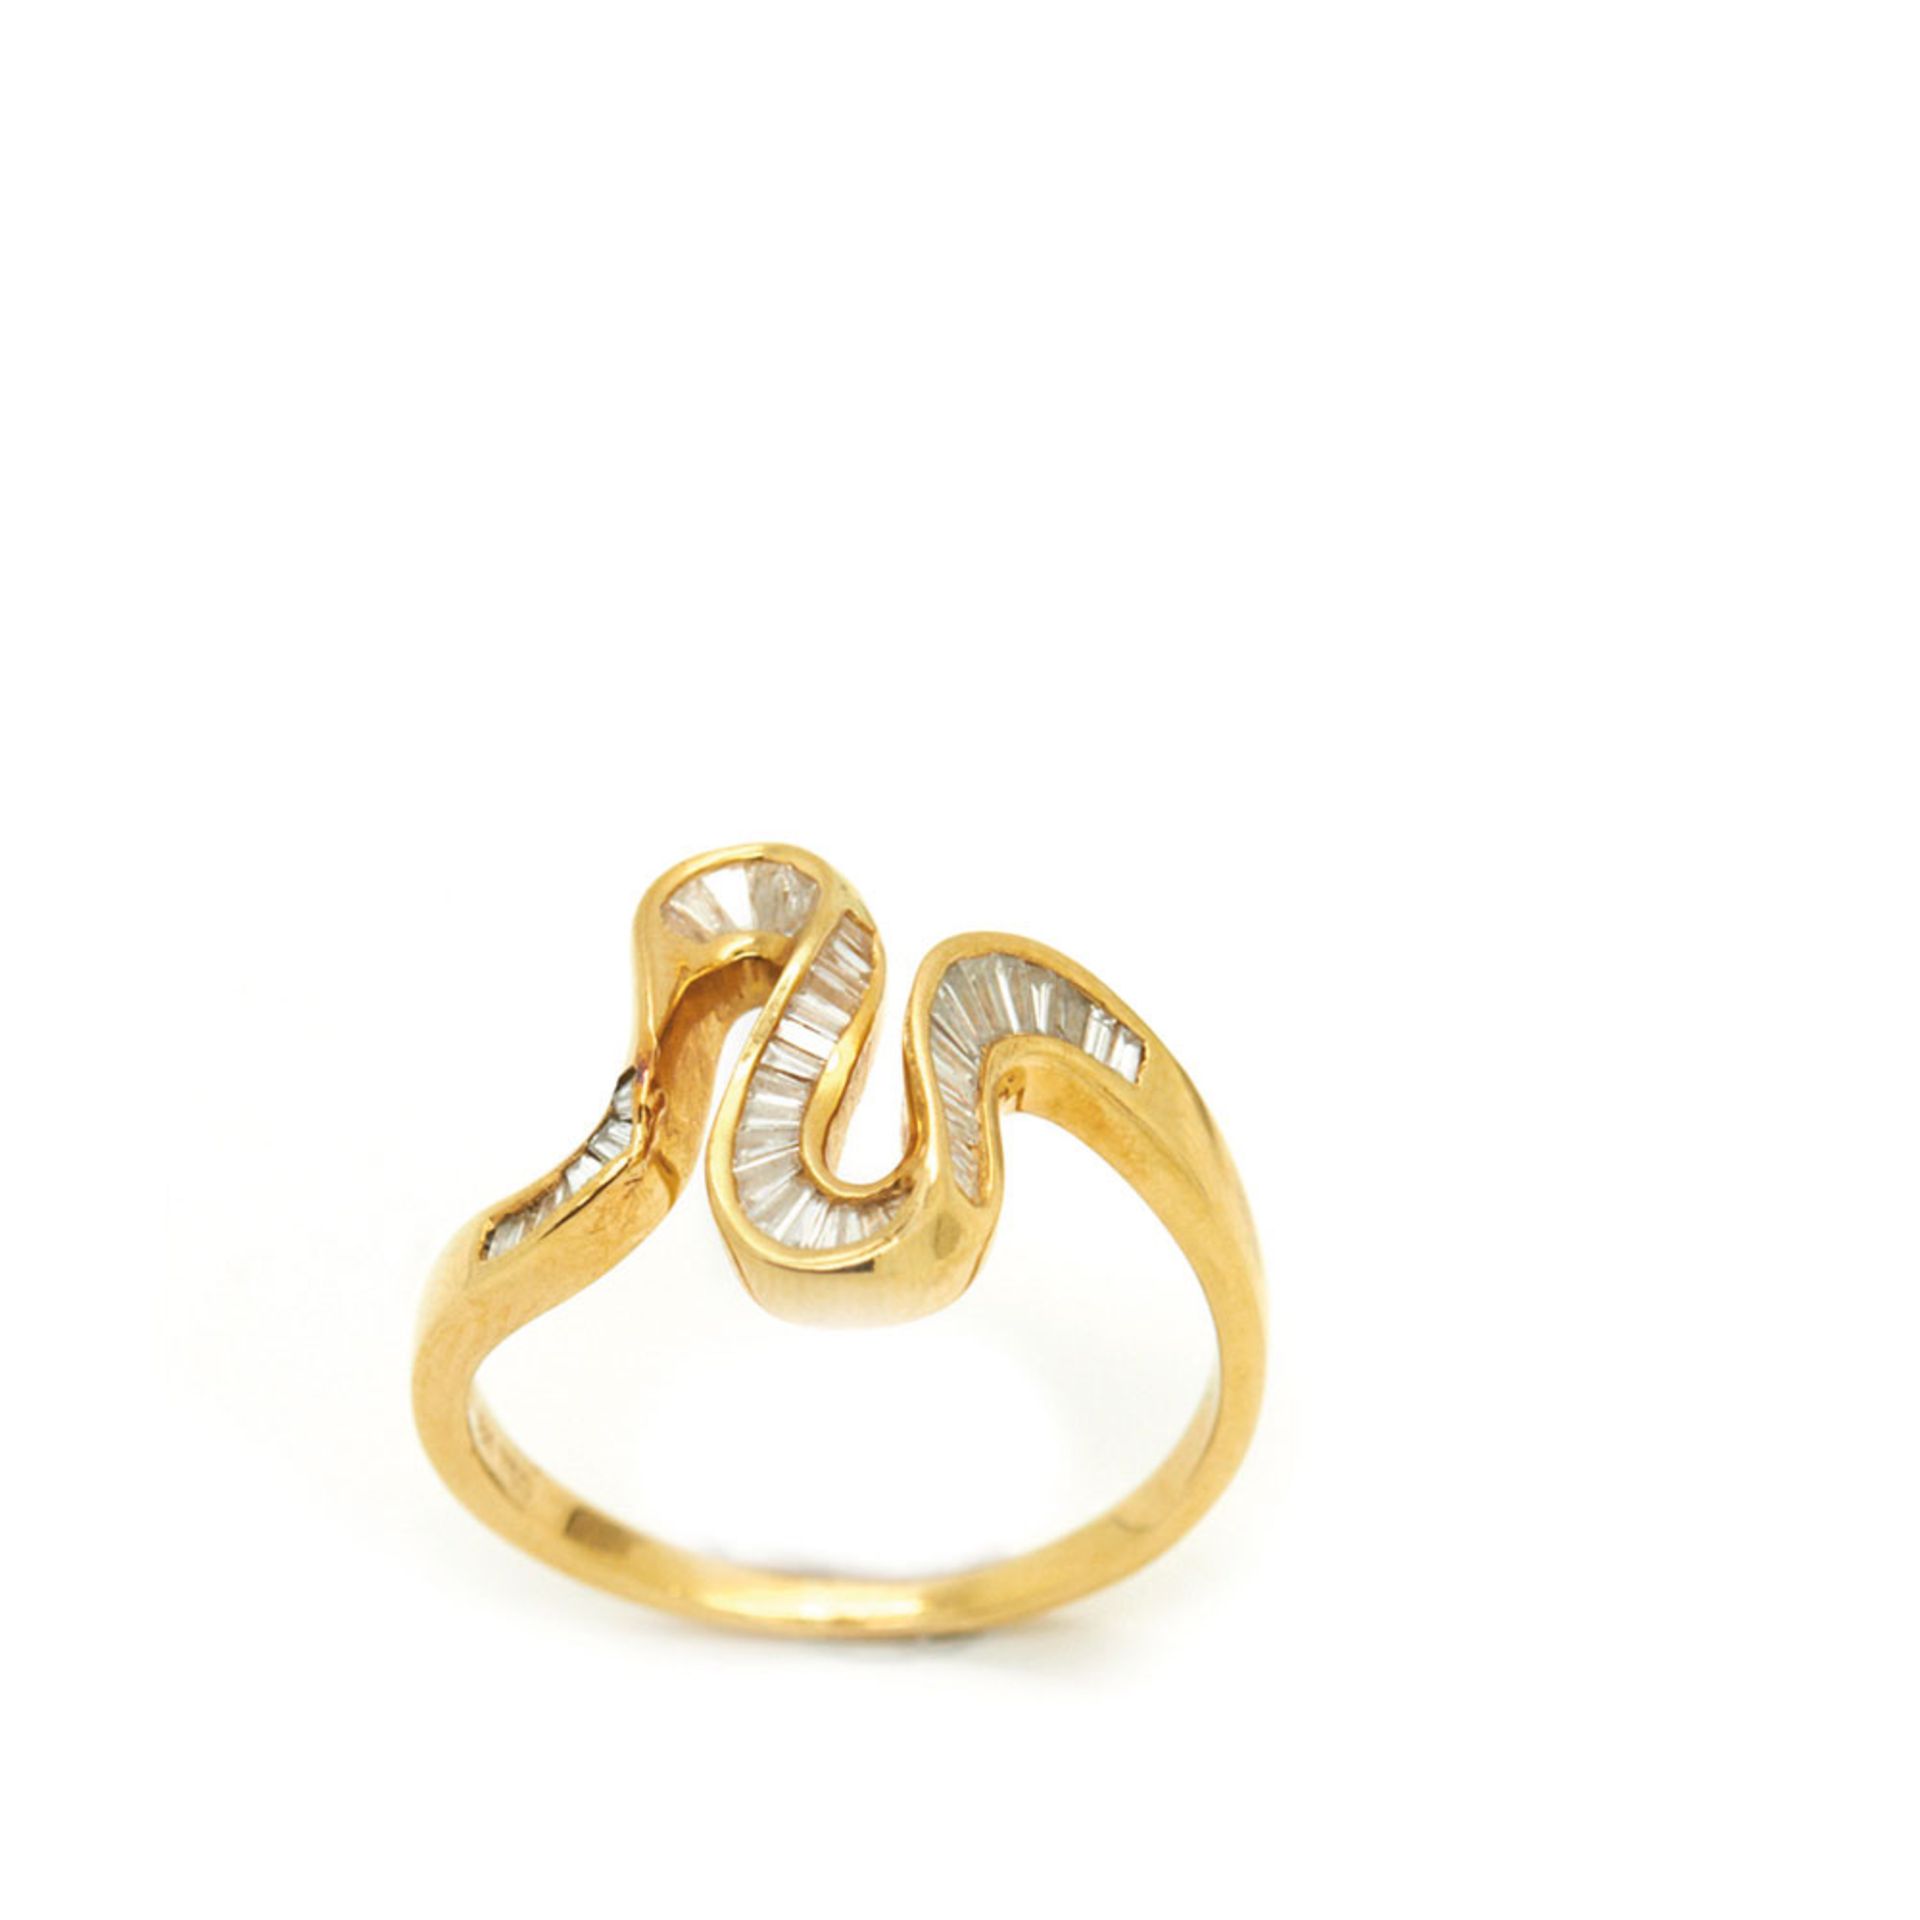 Gold and diamonds ringSortija en oro con centro de roleos de diamantes talla trapecio calibrados.